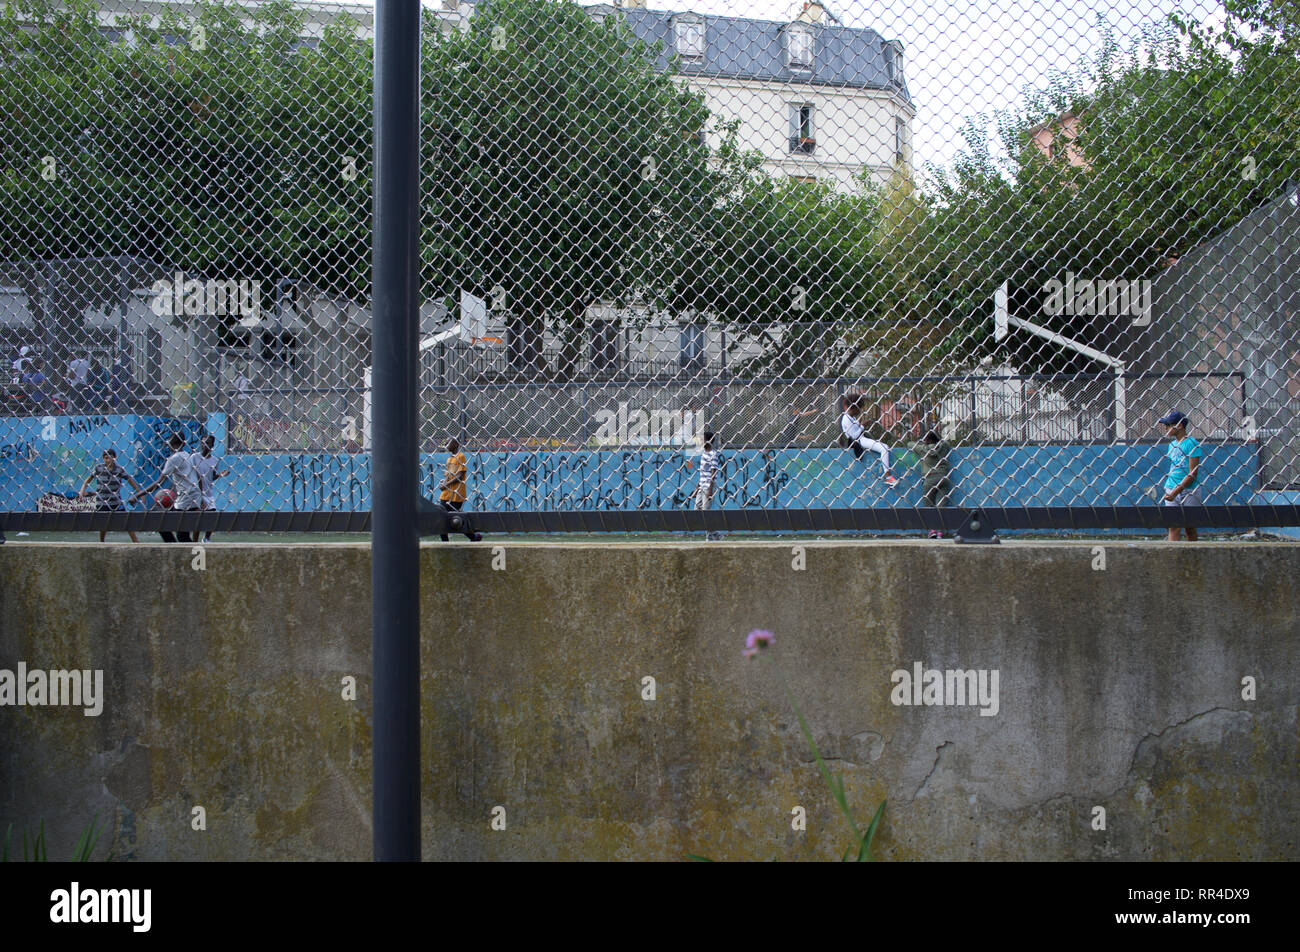 Les enfants et les adolescents jouent et s'accrochent sur un terrain de football clôturé, place Léon, rue des Garde, Goutte d'Or, 75018, Paris, France Banque D'Images